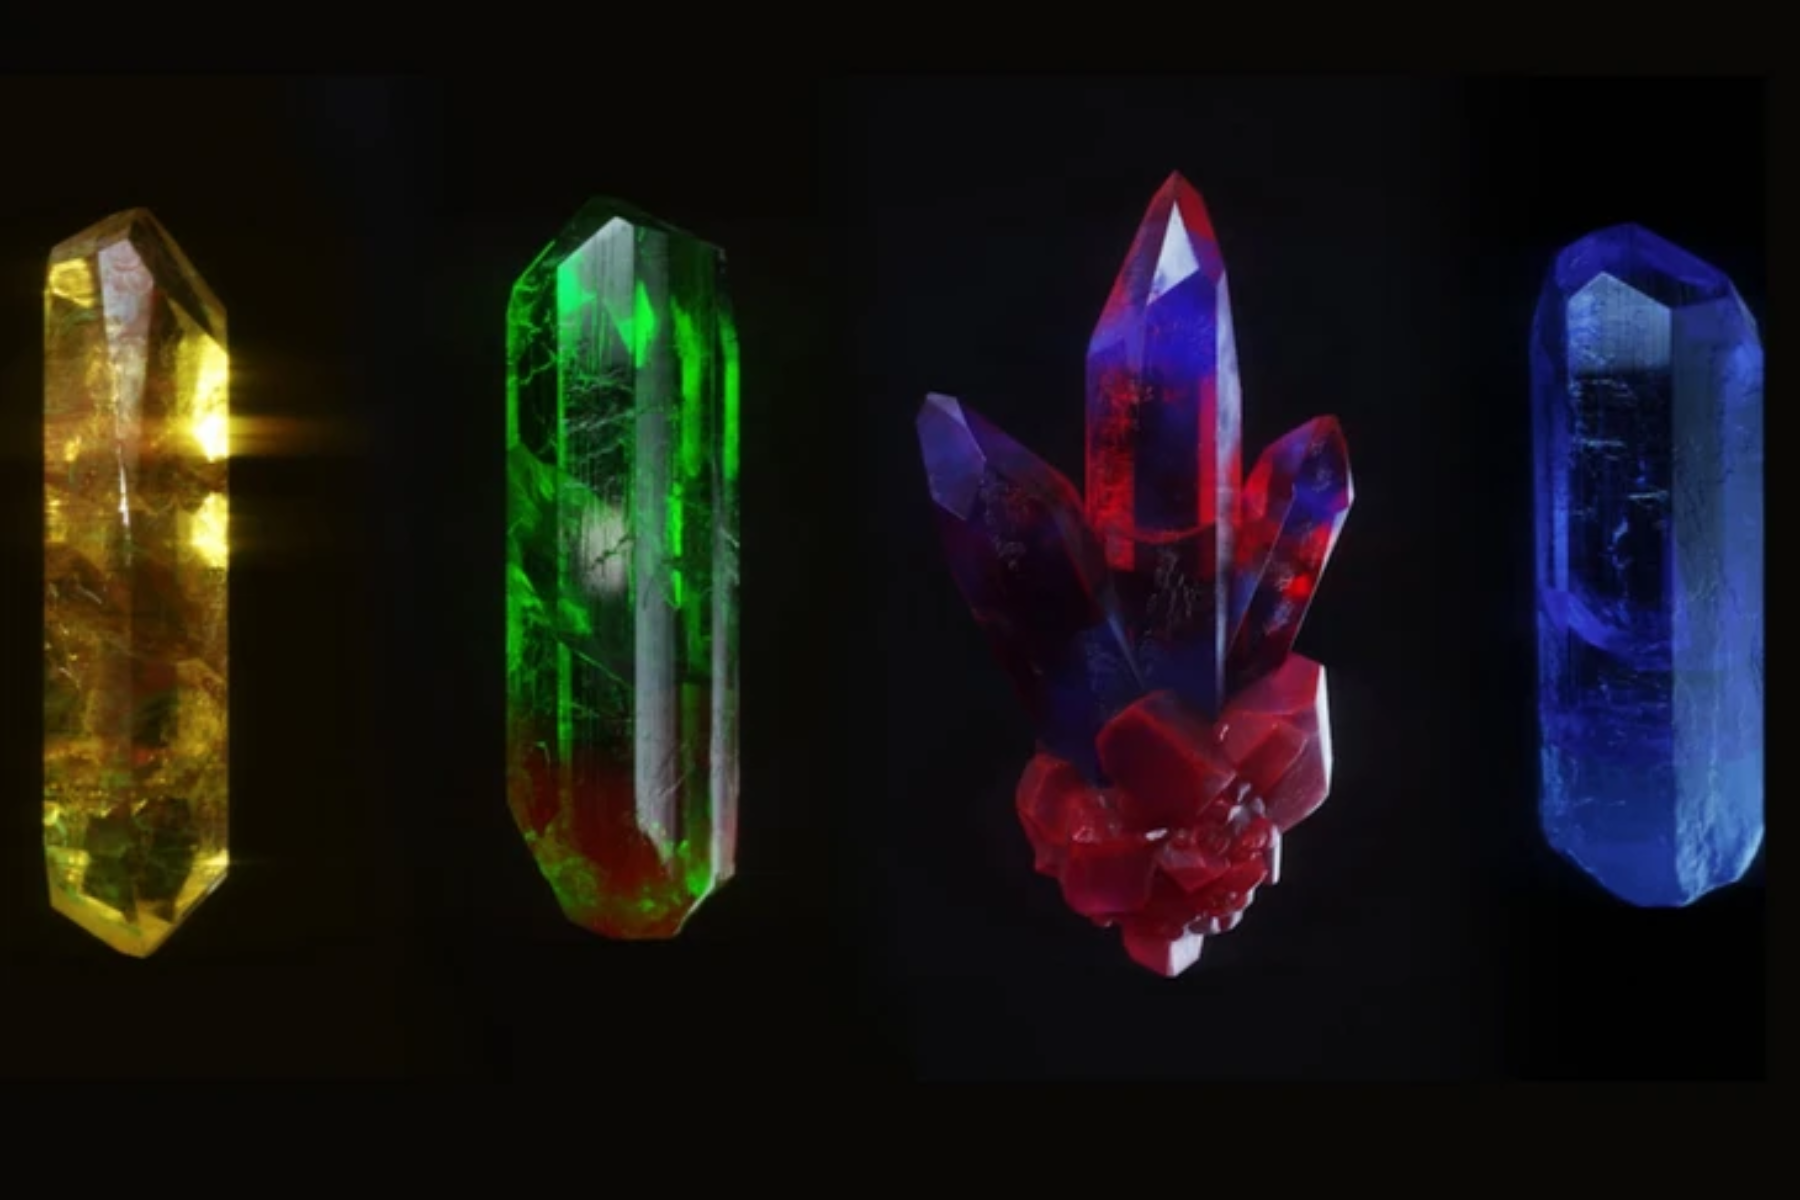 Four different gemstones on a dark background